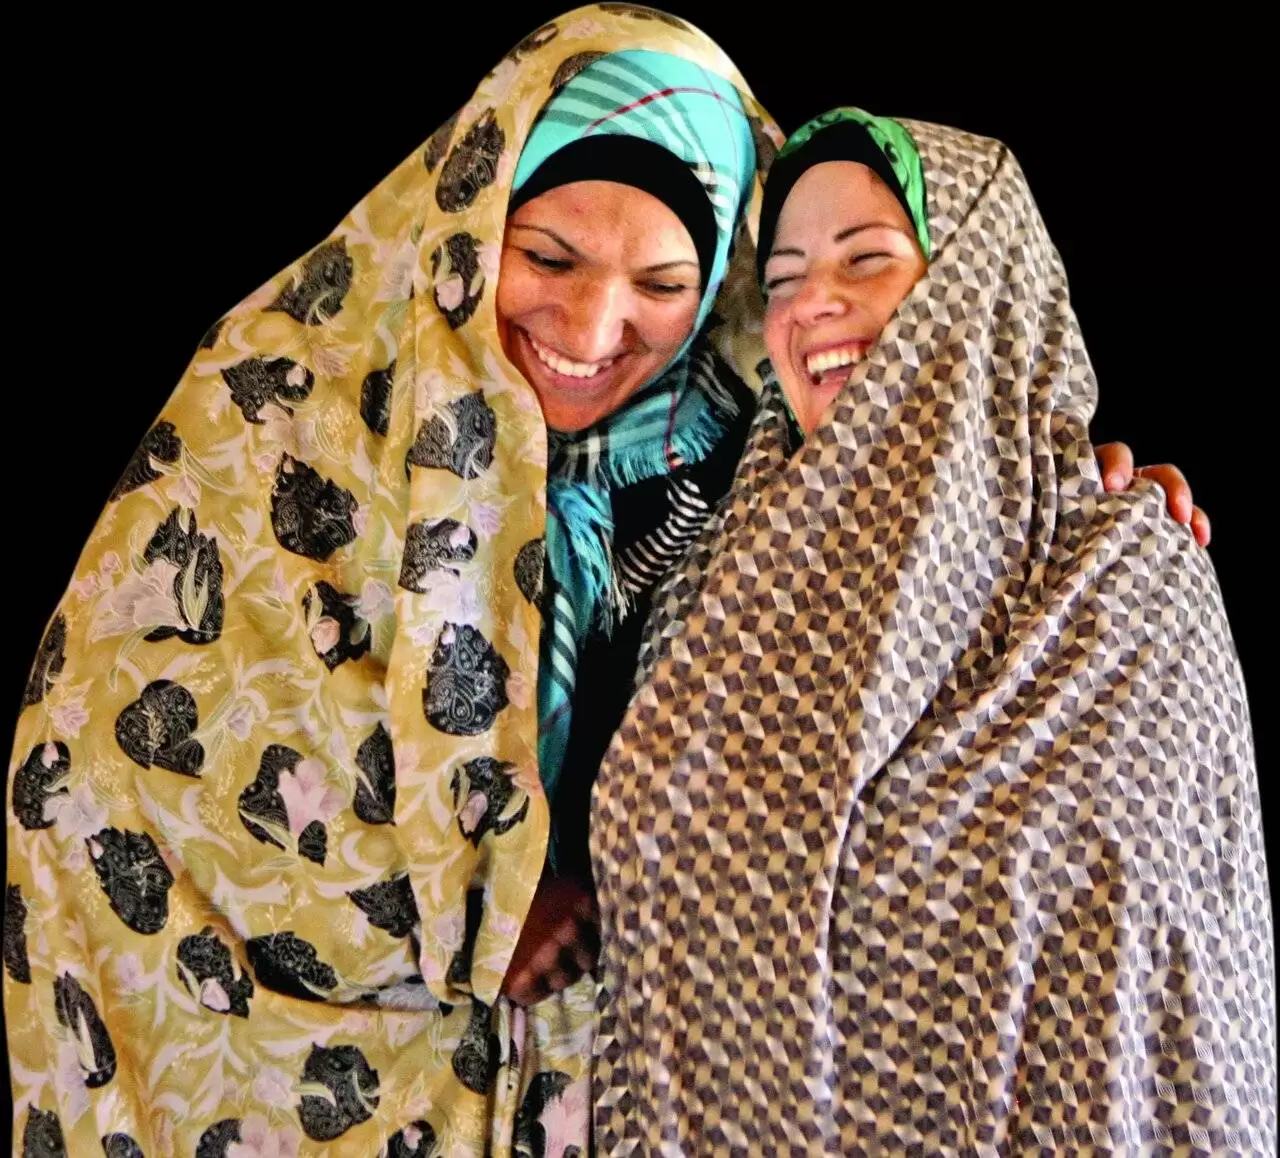 ازدواج همزمان  2 دختر ایرانی با پسر 16 ساله در کاشمر !  -  2 عروس زیر یک سقف !